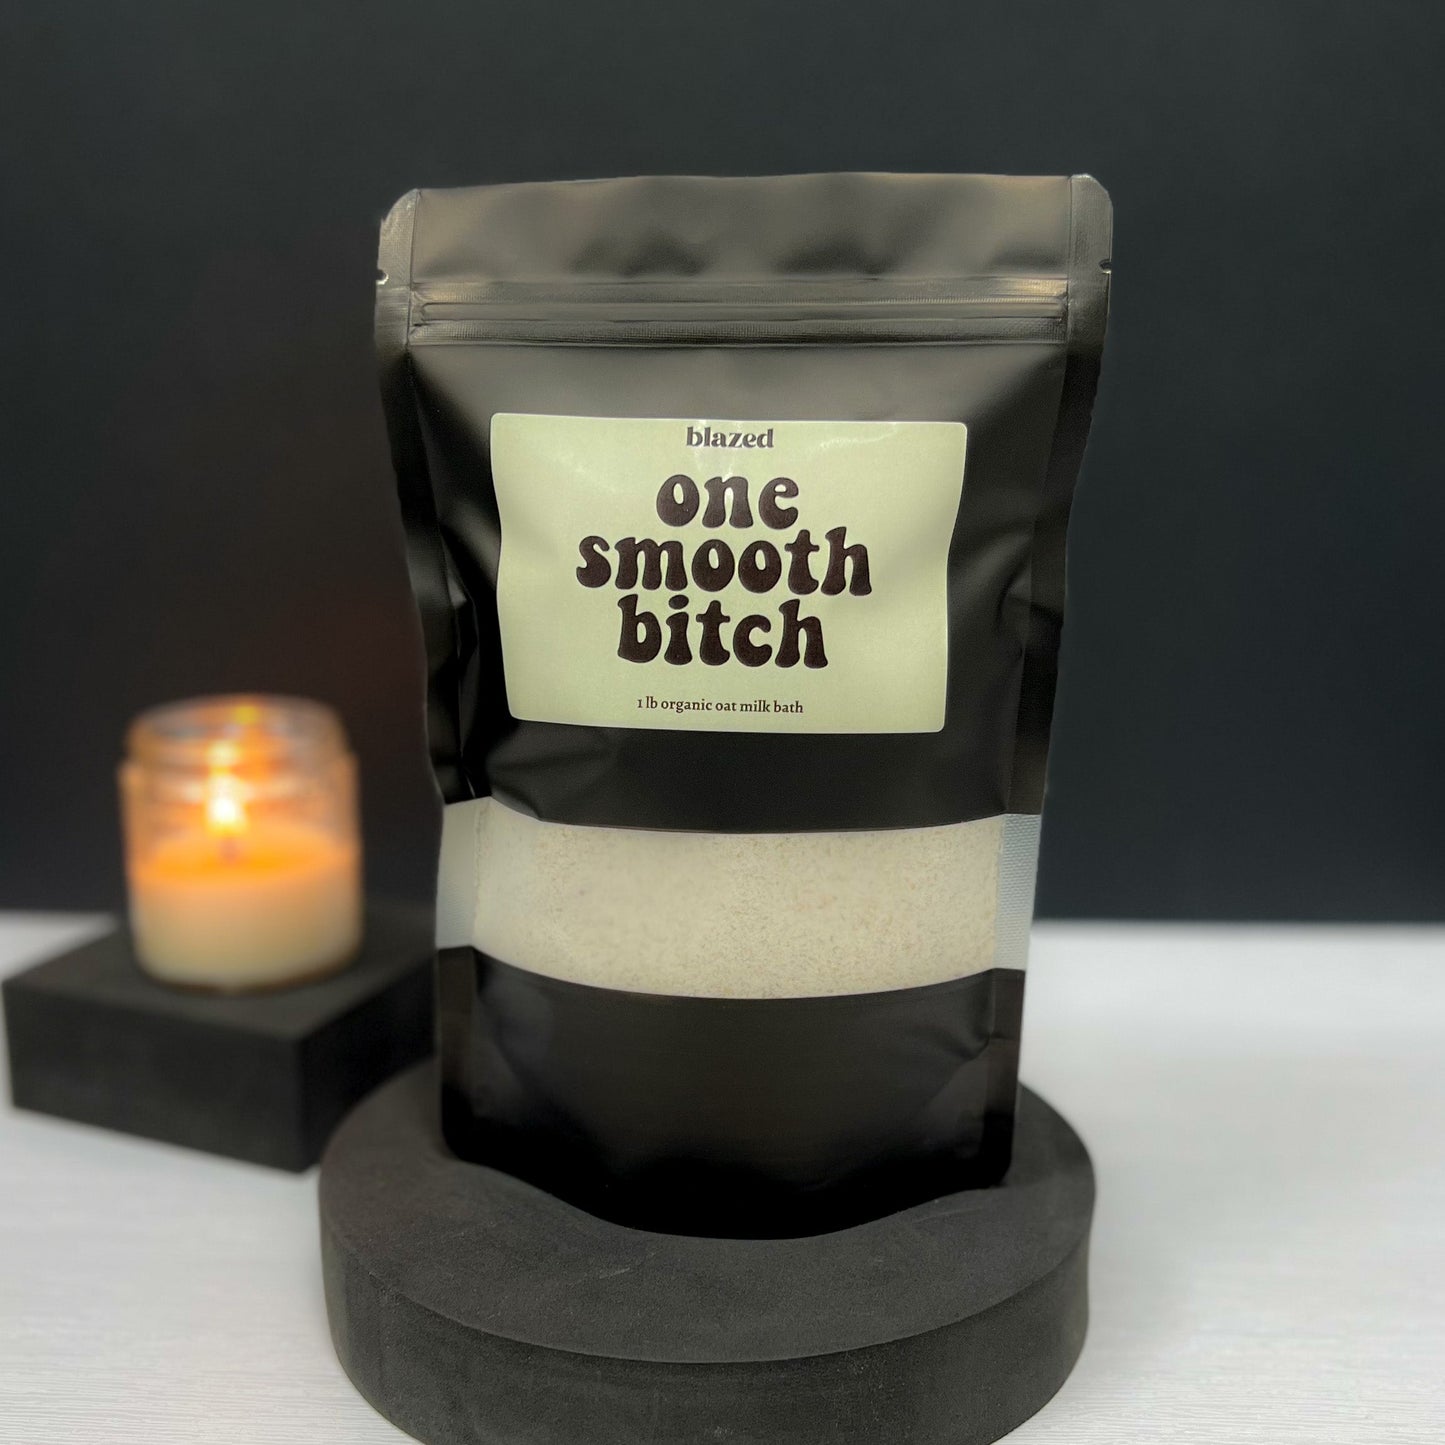 One Smooth Bitch - Vanilla Oat Milk Bath